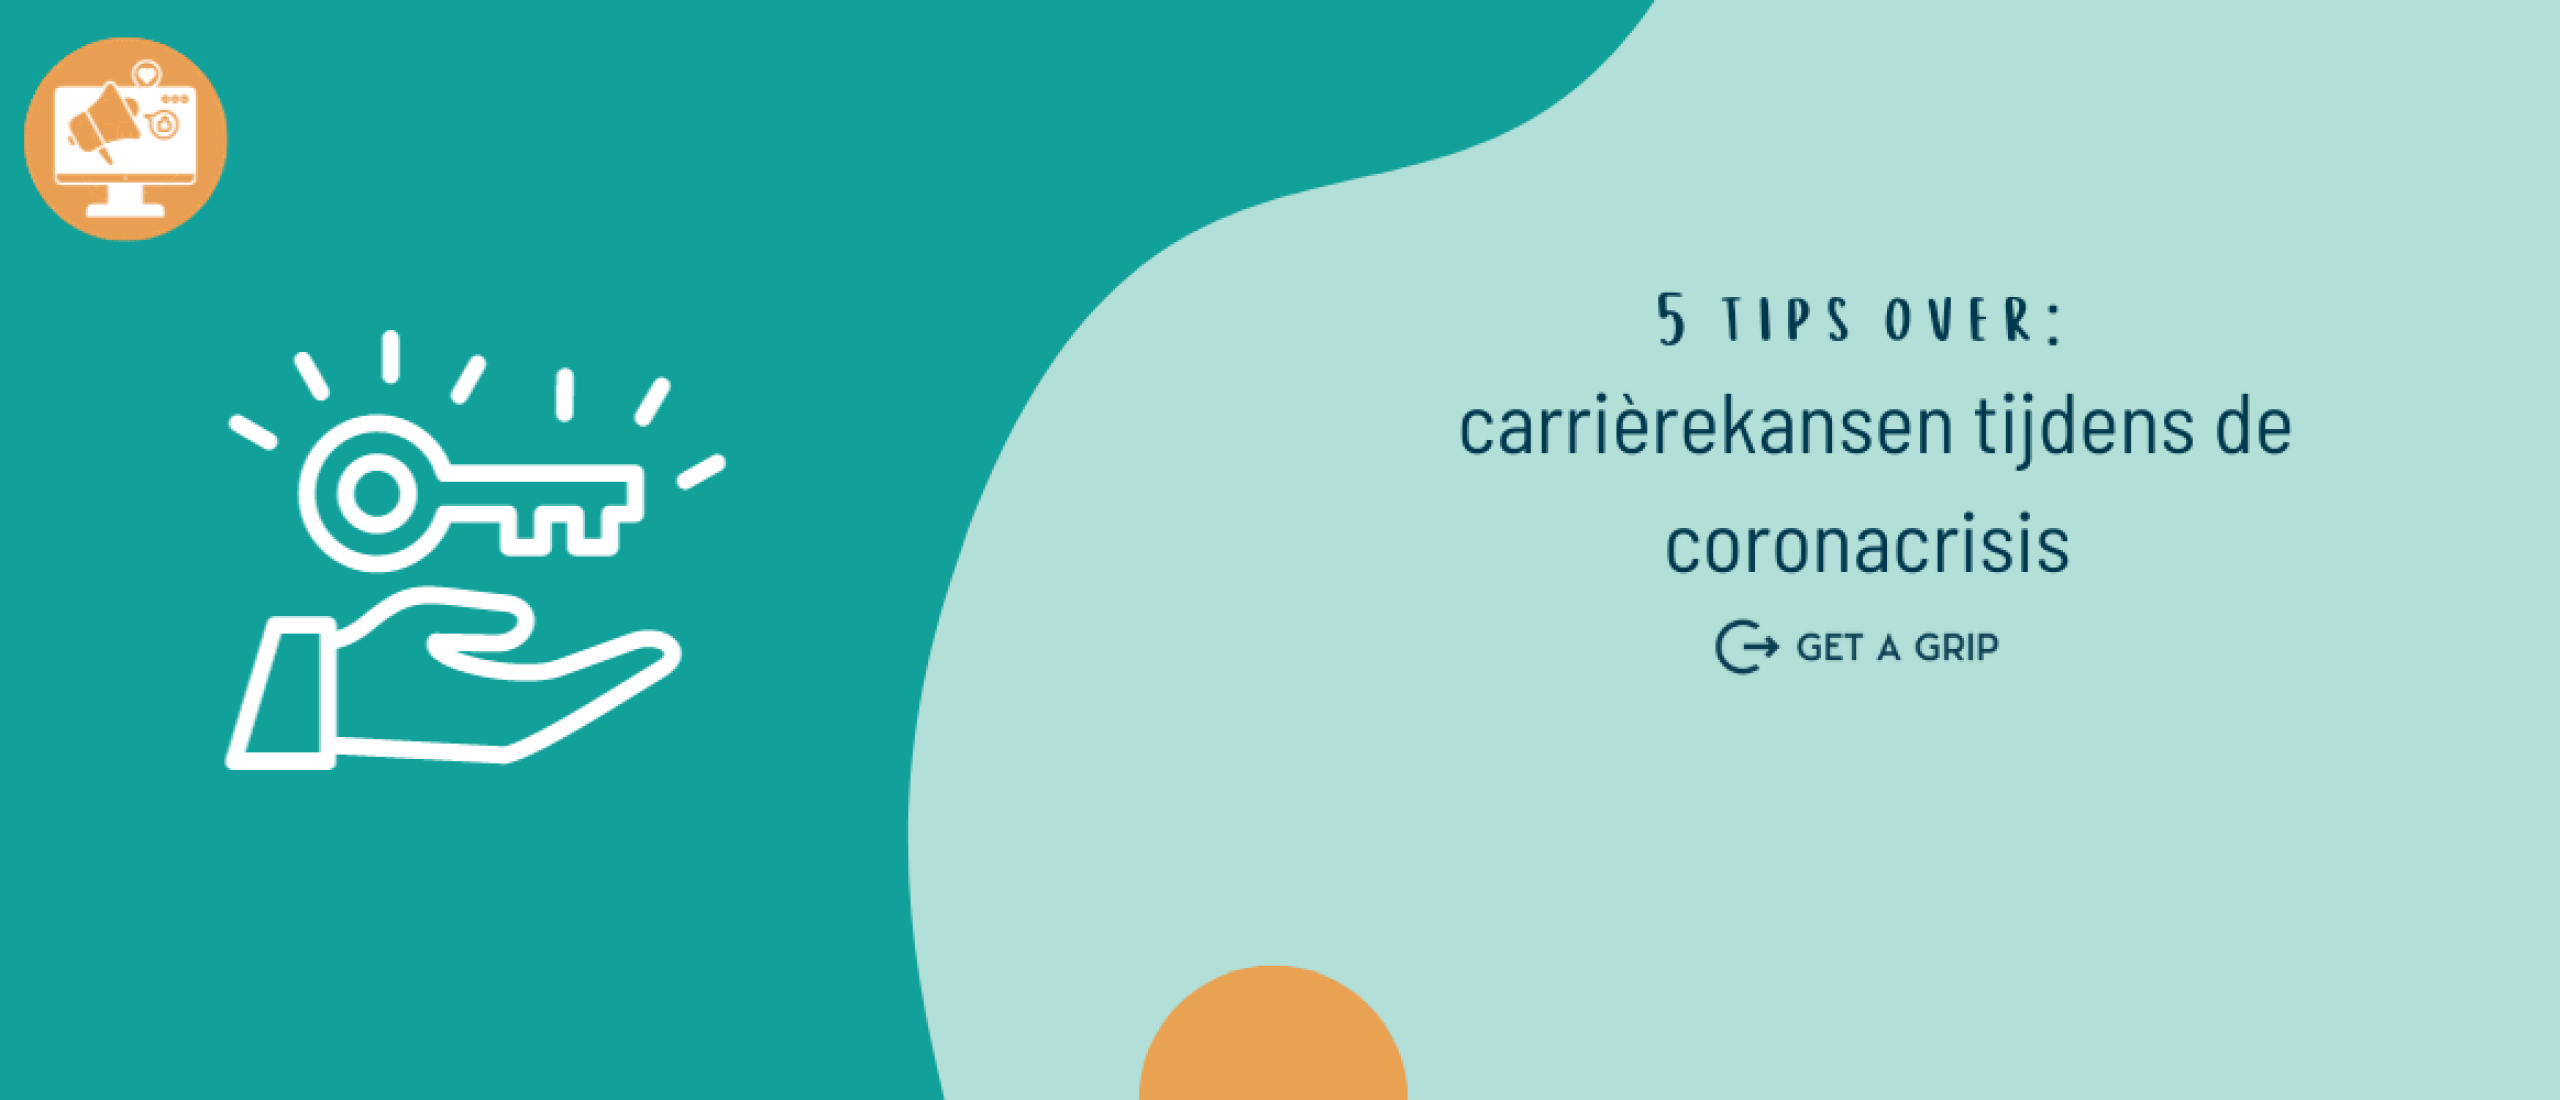 Vergroot carrièrekansen tijdens de coronacrisis: 5 tips